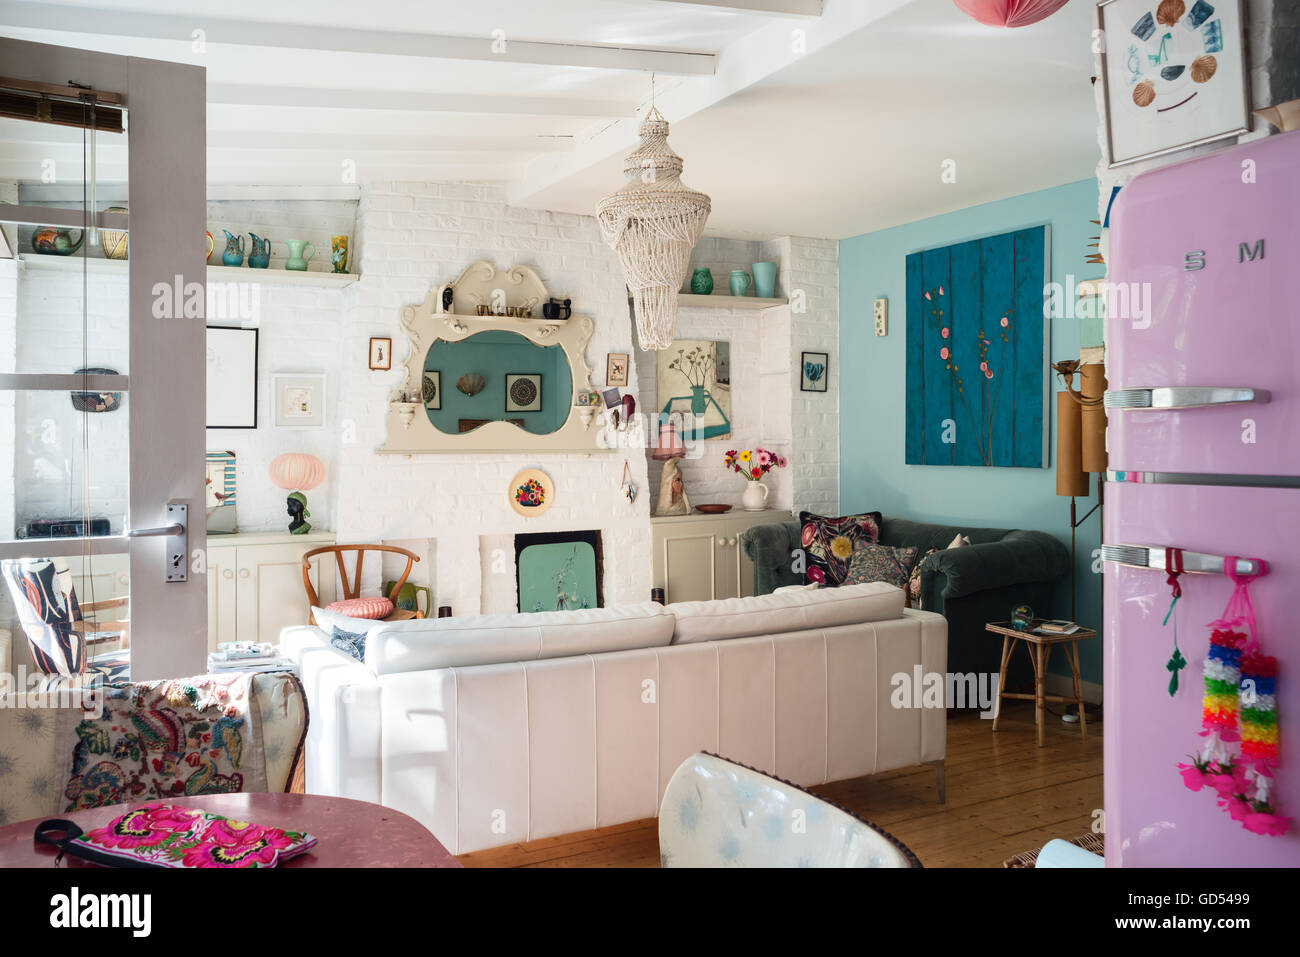 Helle Wohnküche mit Kaminsims Spiegel, Hans Wegner "Wishbone" Stuhl und dekorative Keramik, die auf einem hohen Regal angezeigt Stockfoto